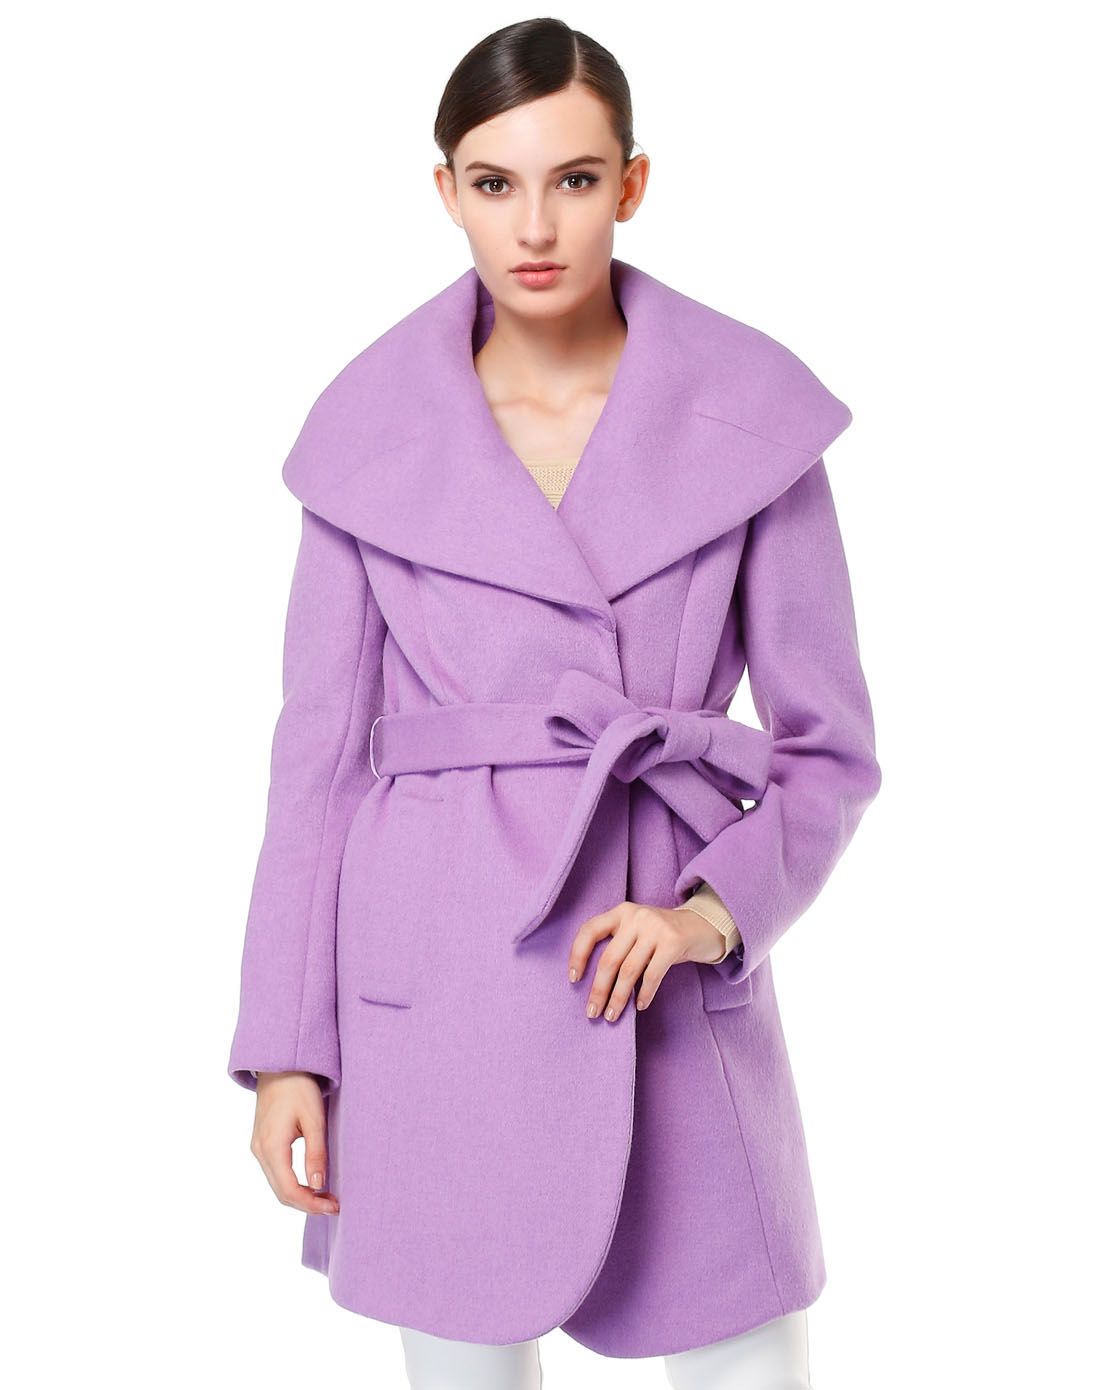 浅紫色成熟斯文长袖大衣